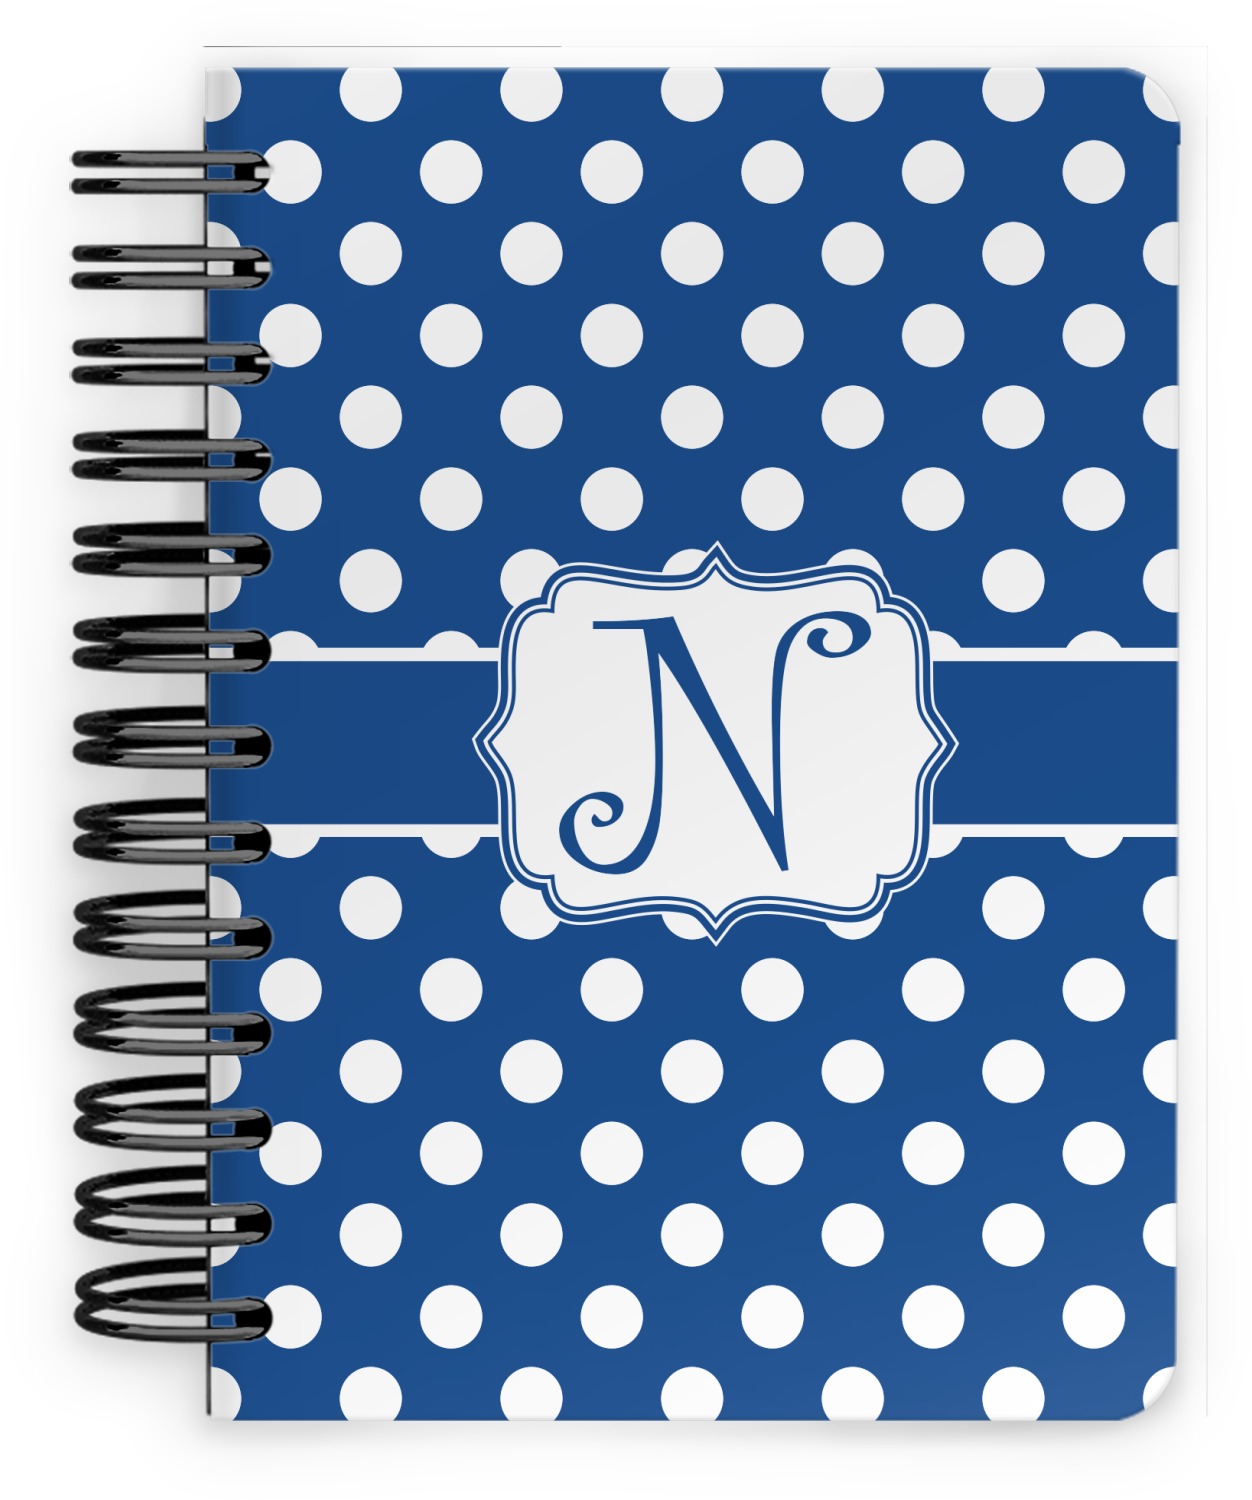 5x7 spiral bound notebook